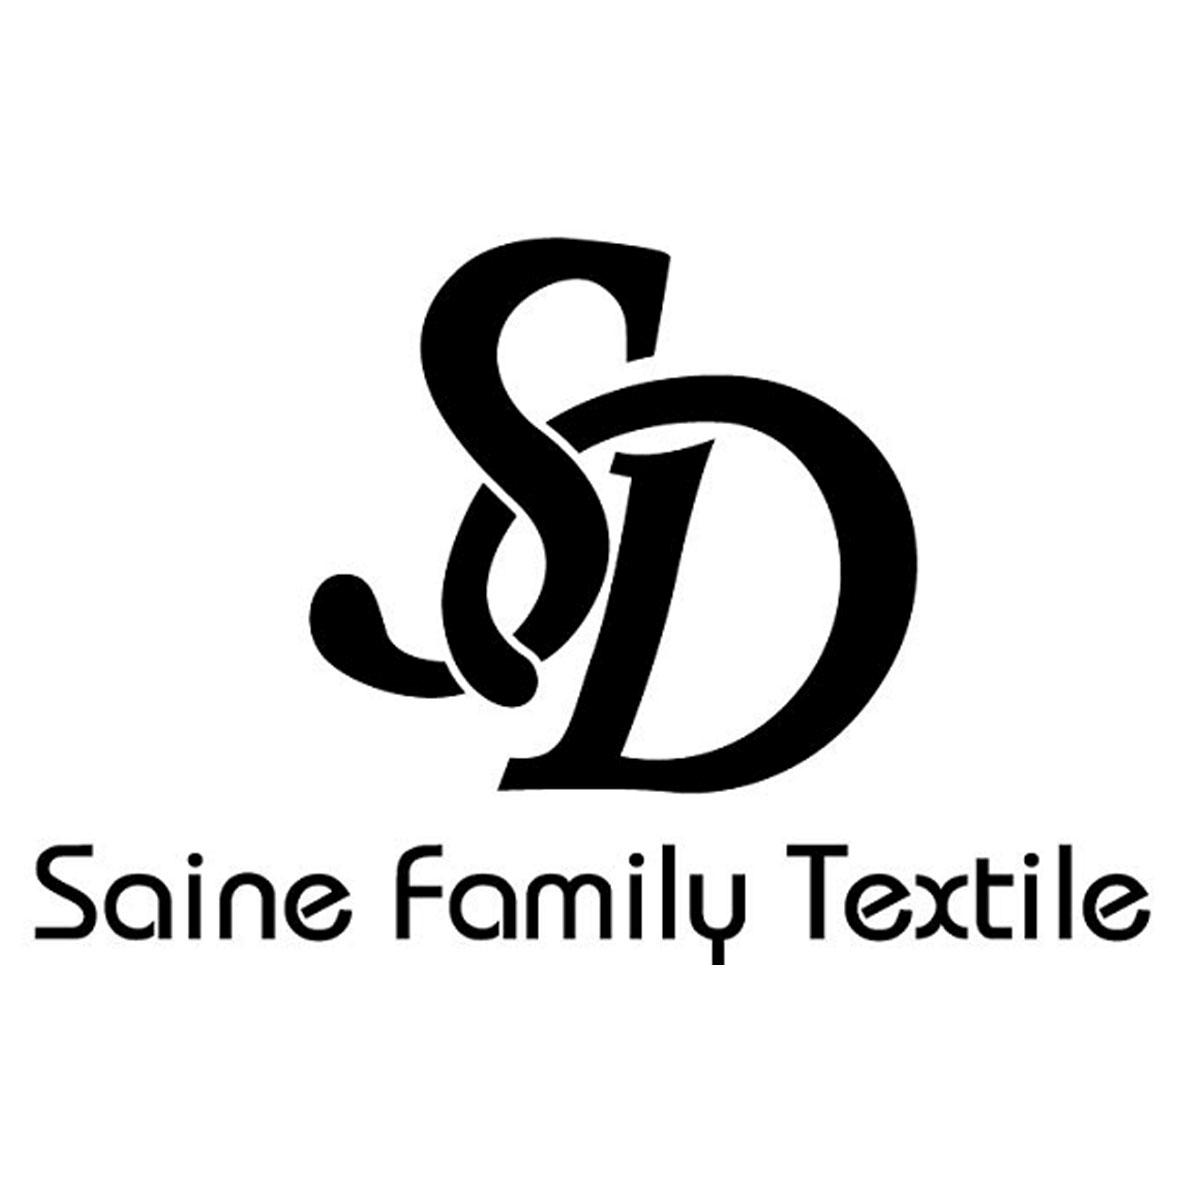 saine family textile sd商标公告